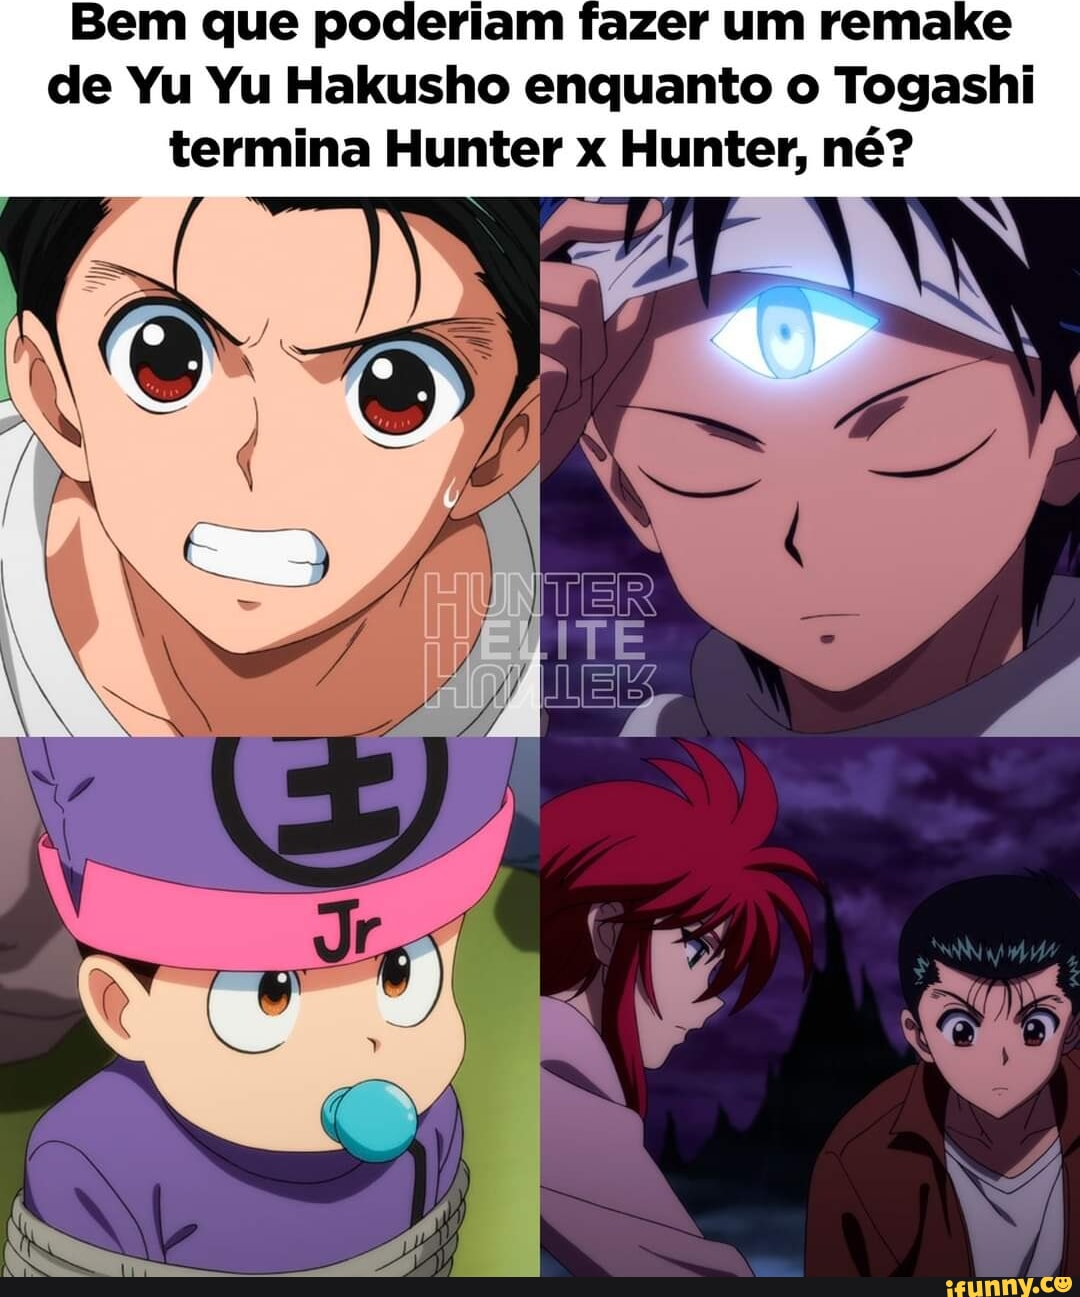 comparando as dublagens de Hunter x Hunter. Comente um outro anime que